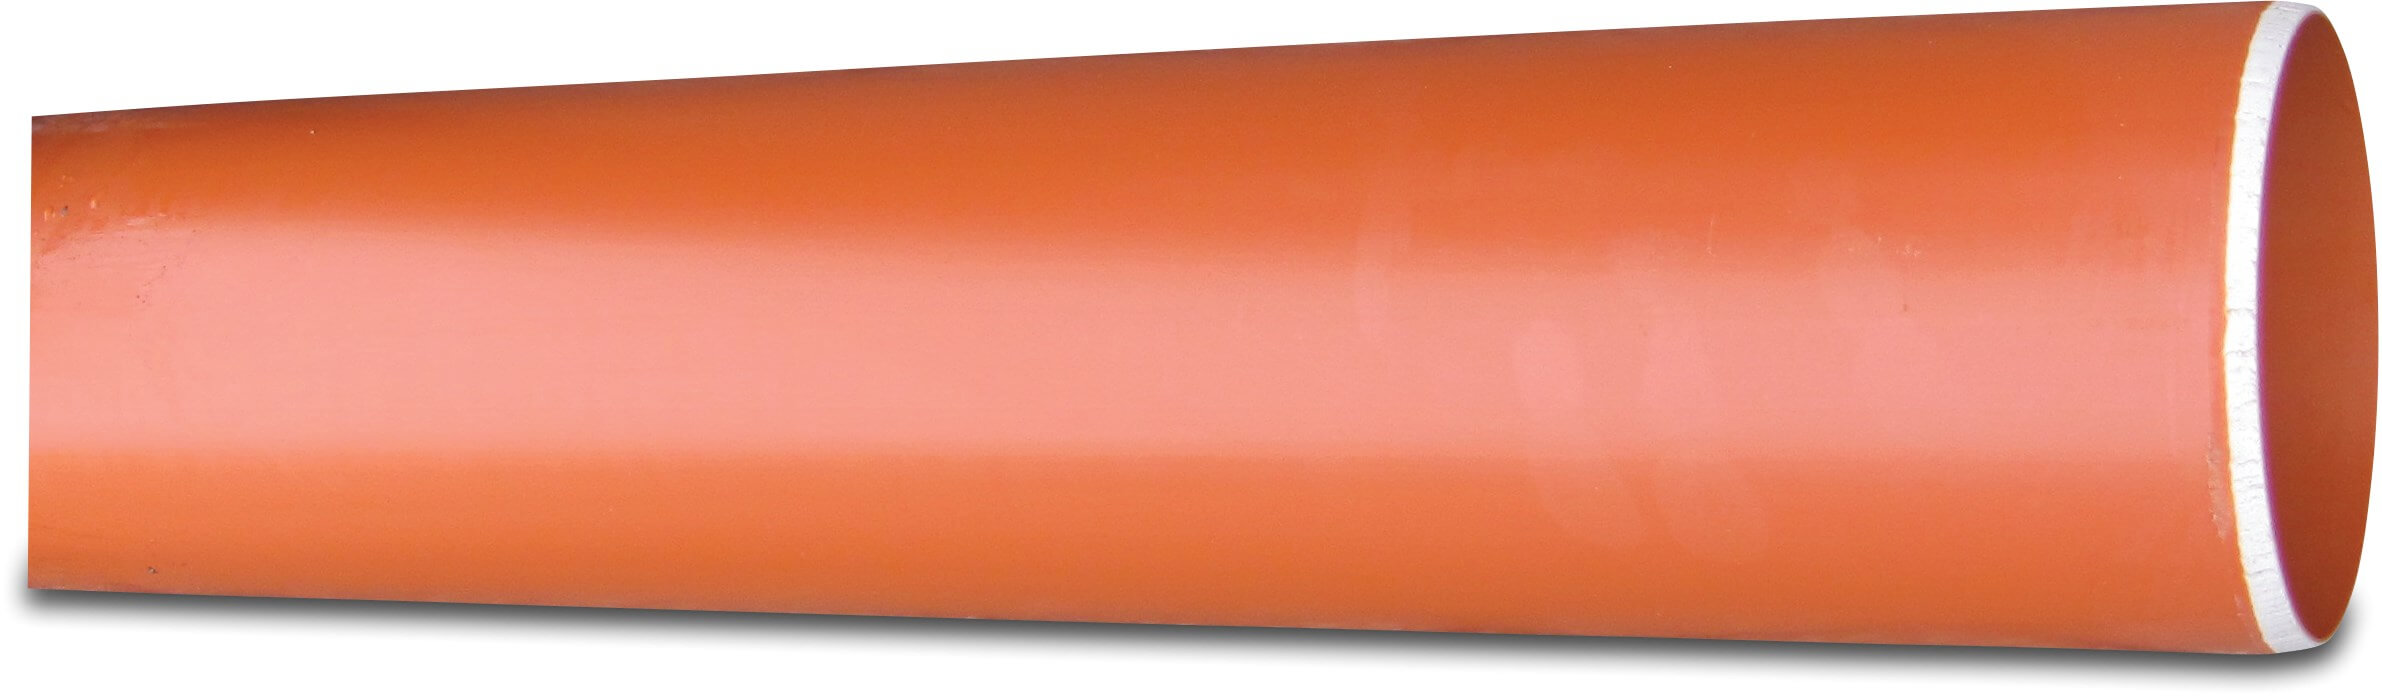 Rura kanalizacyjna PVC-U 110 mm x 3,2 mm SN4 gładkie czerwono-brązowy 5m KOMO/BENOR